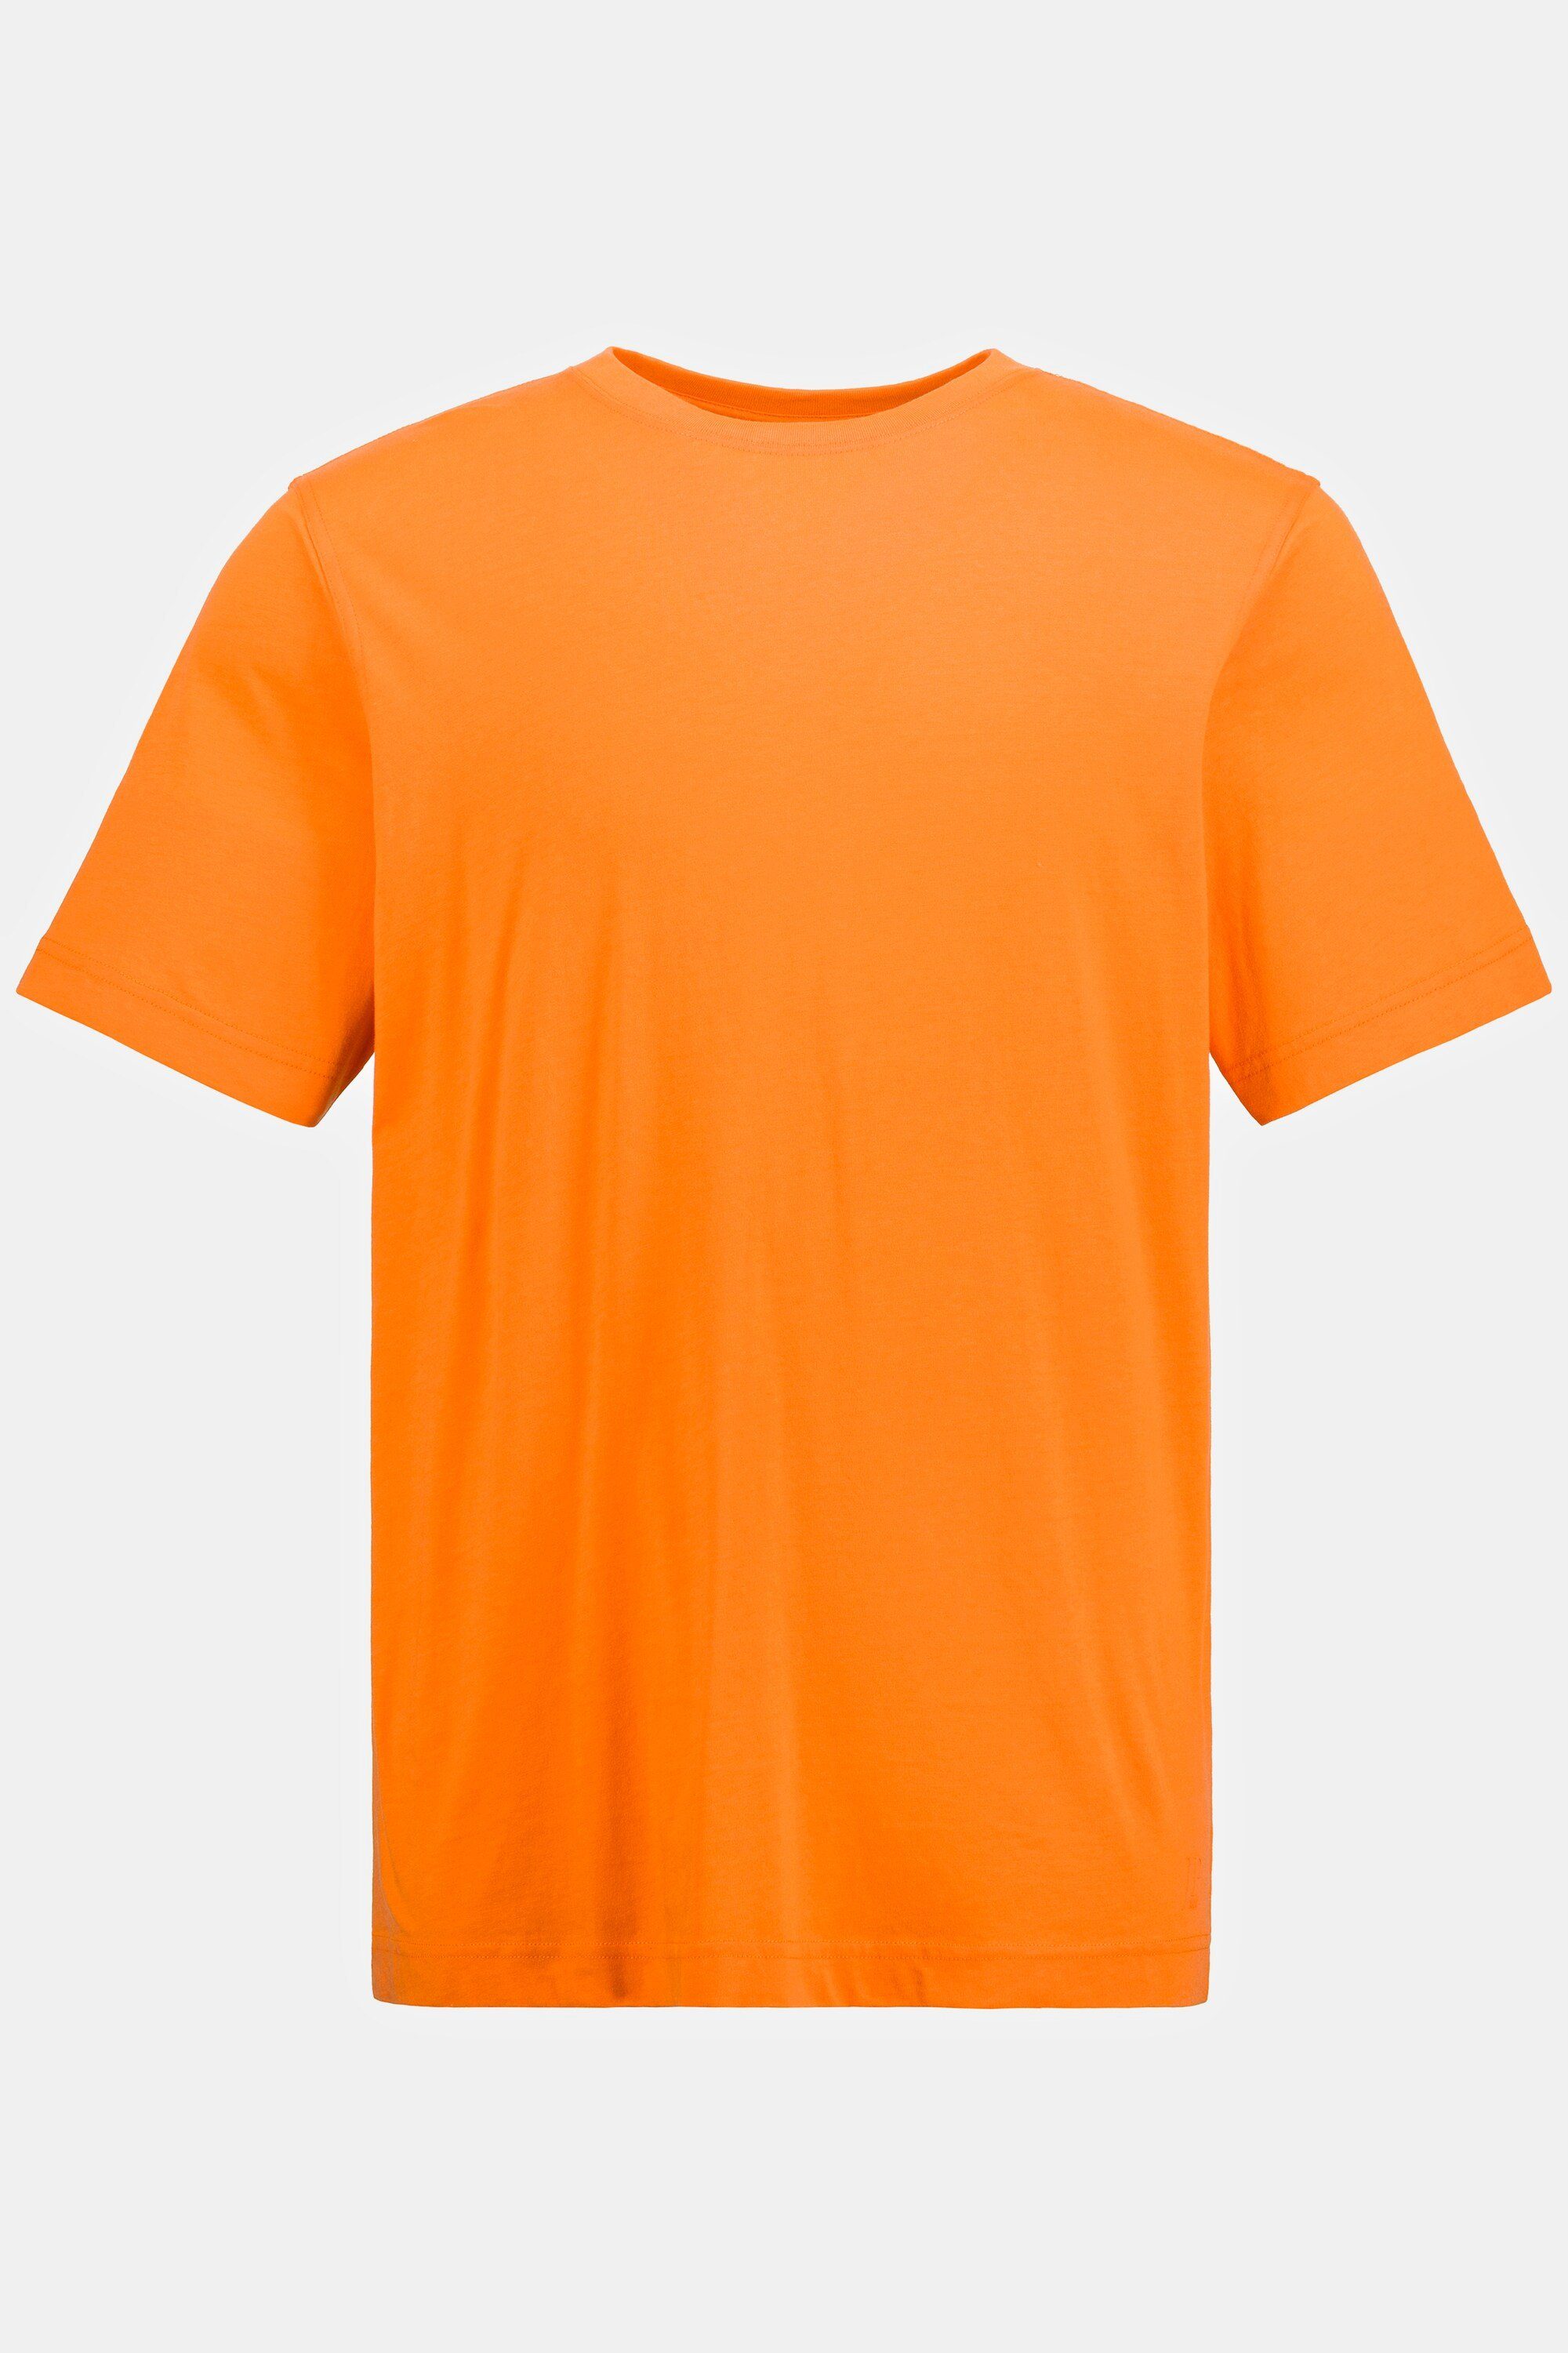 T-Shirt gekämmte hellorange JP1880 T-Shirt Rundhals Baumwolle Basic 8XL bis